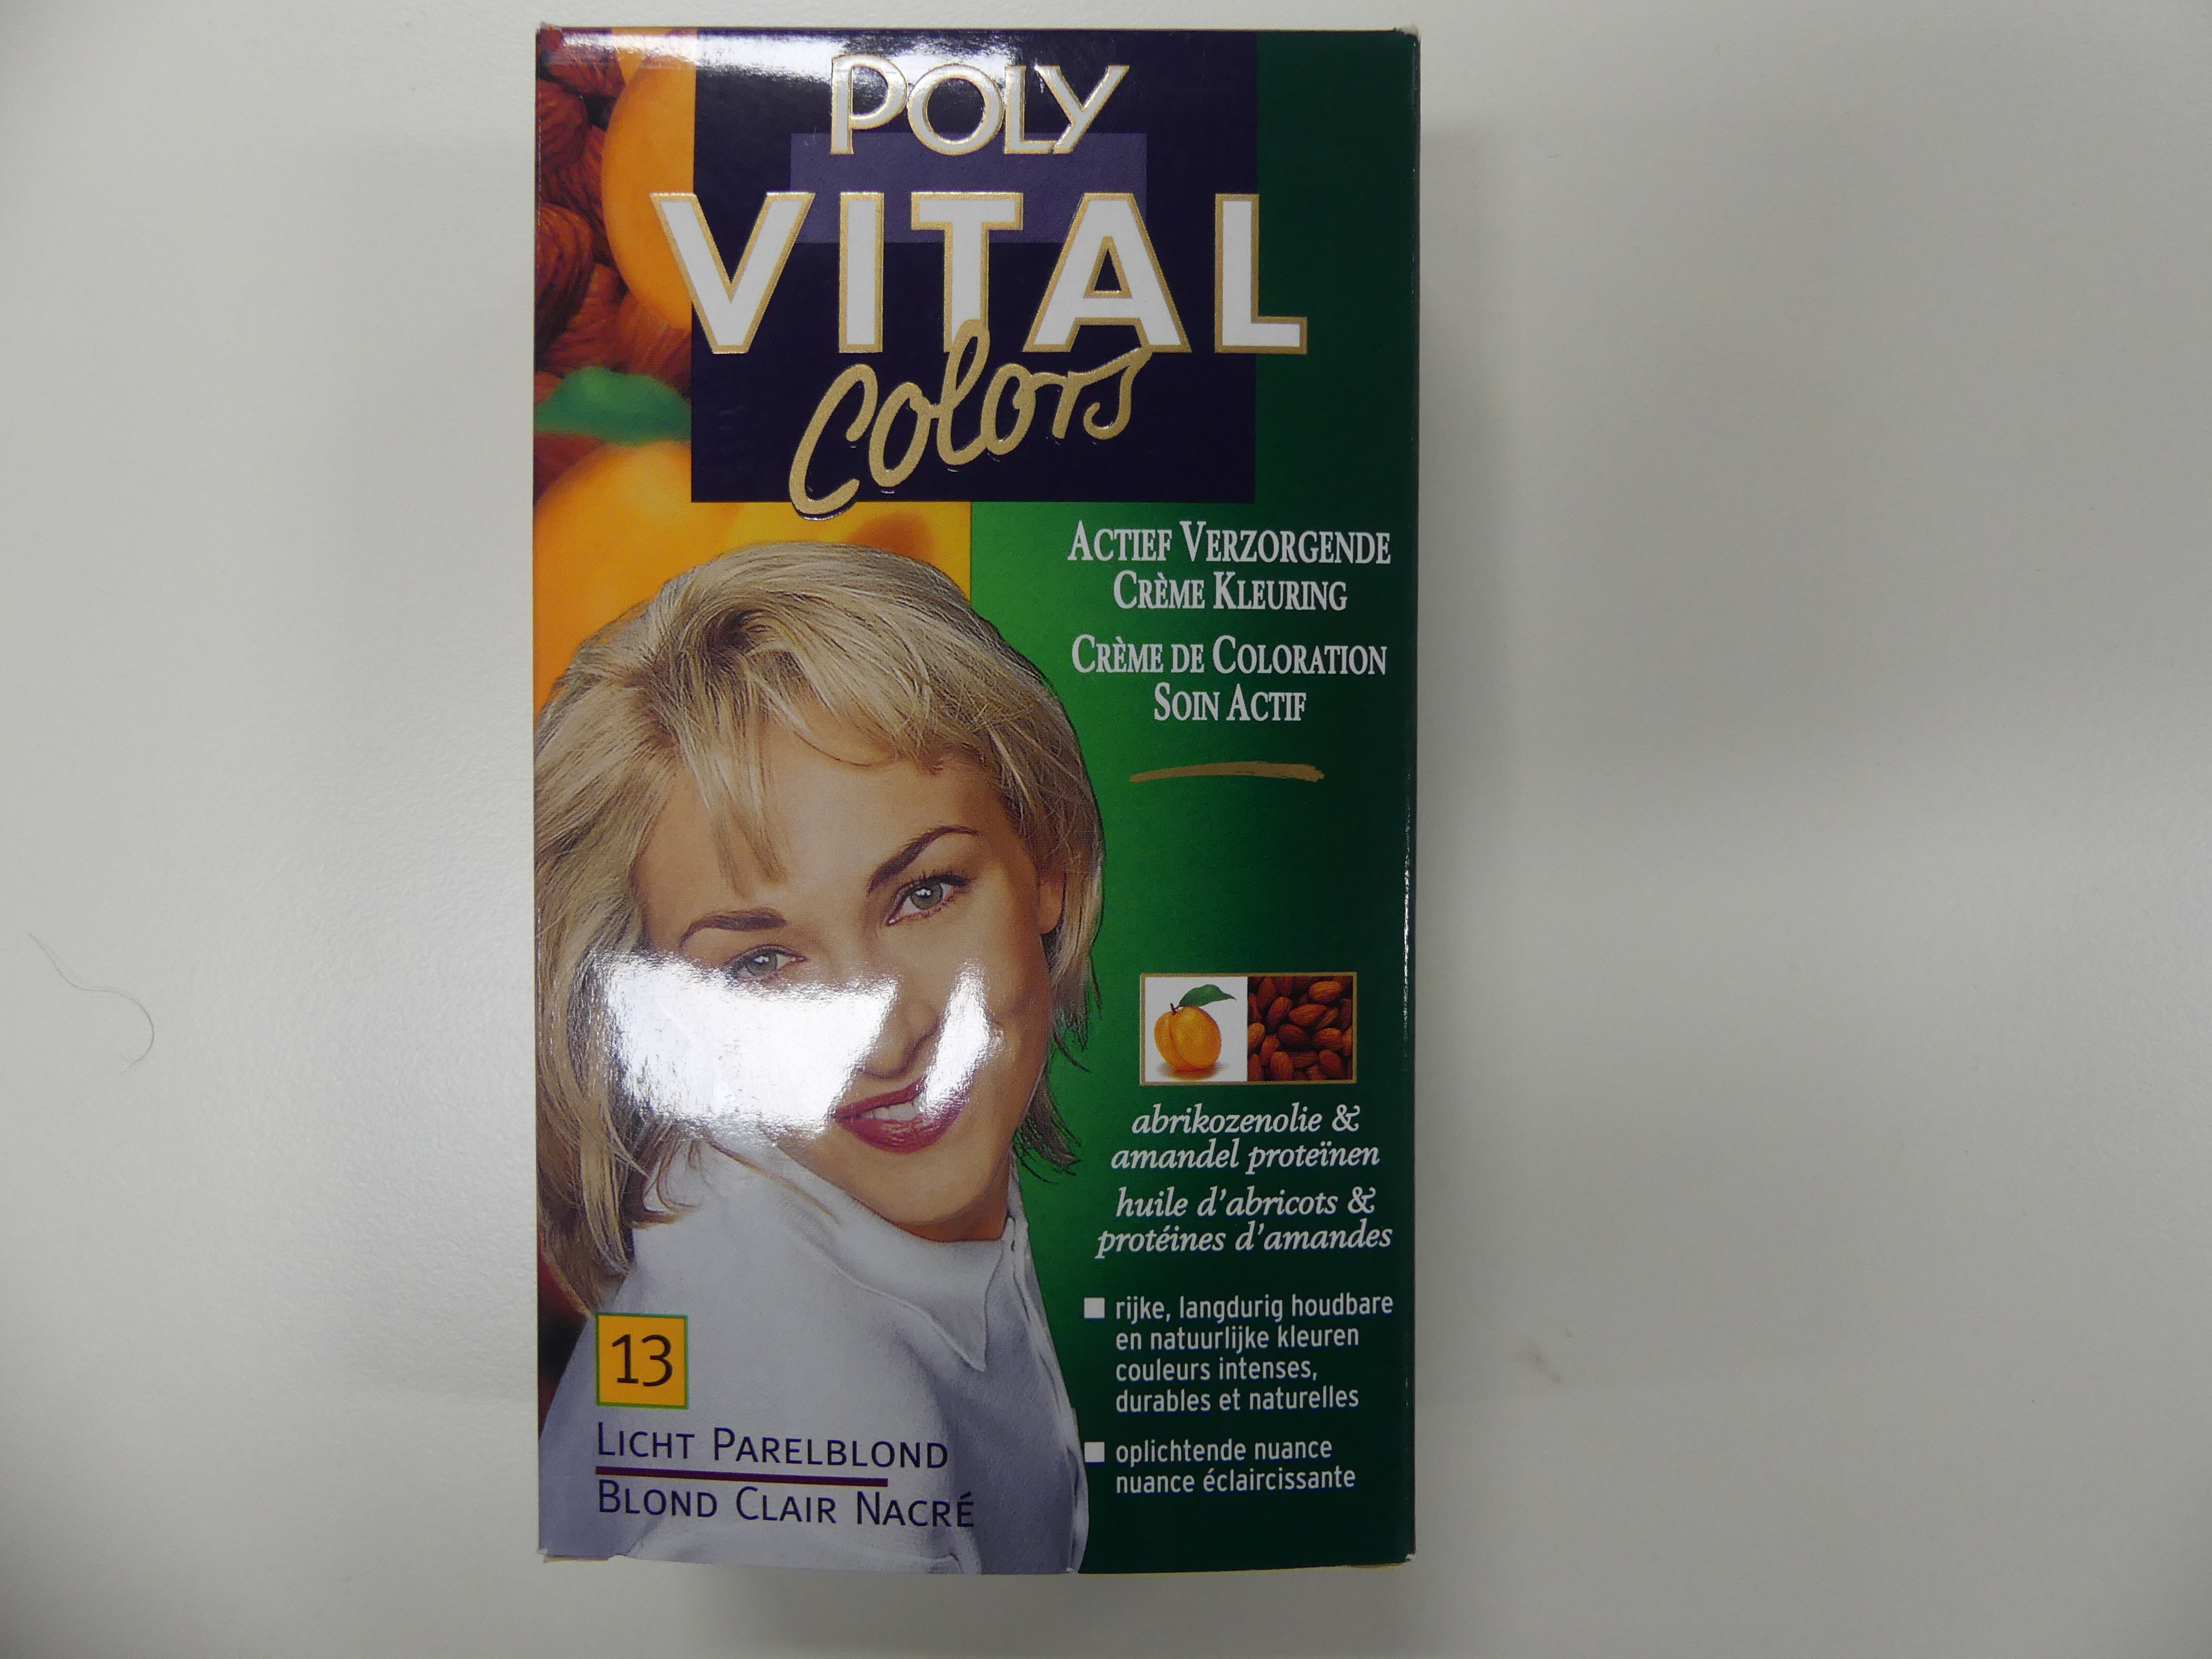 6x Poly Vital Colors creme kleuring licht parelblond 13